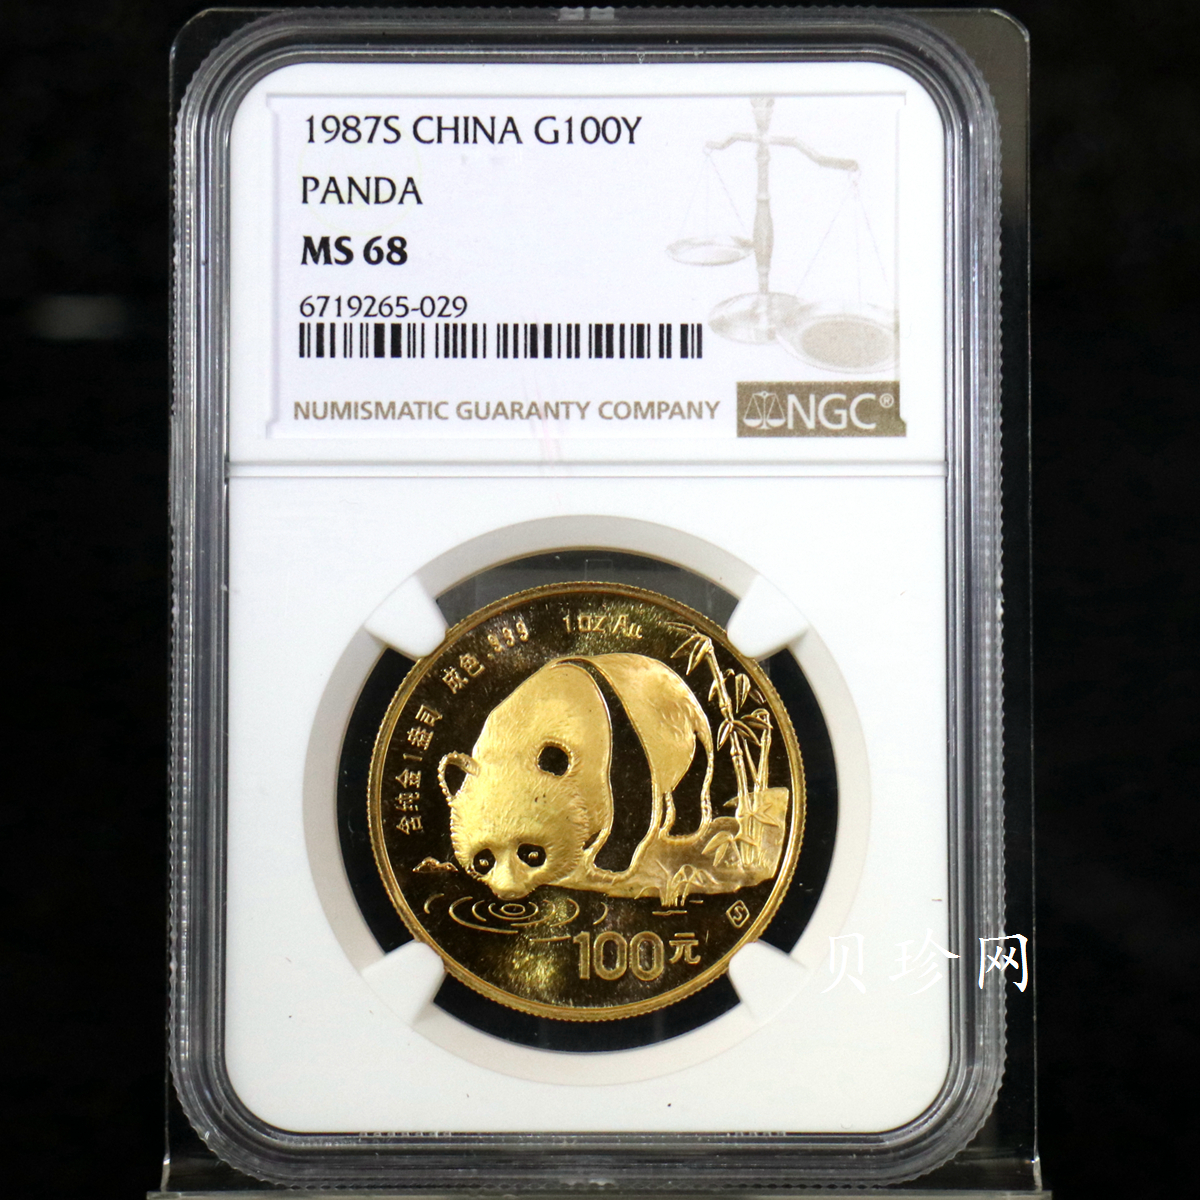 【870101】1987年熊猫1盎司普制金币